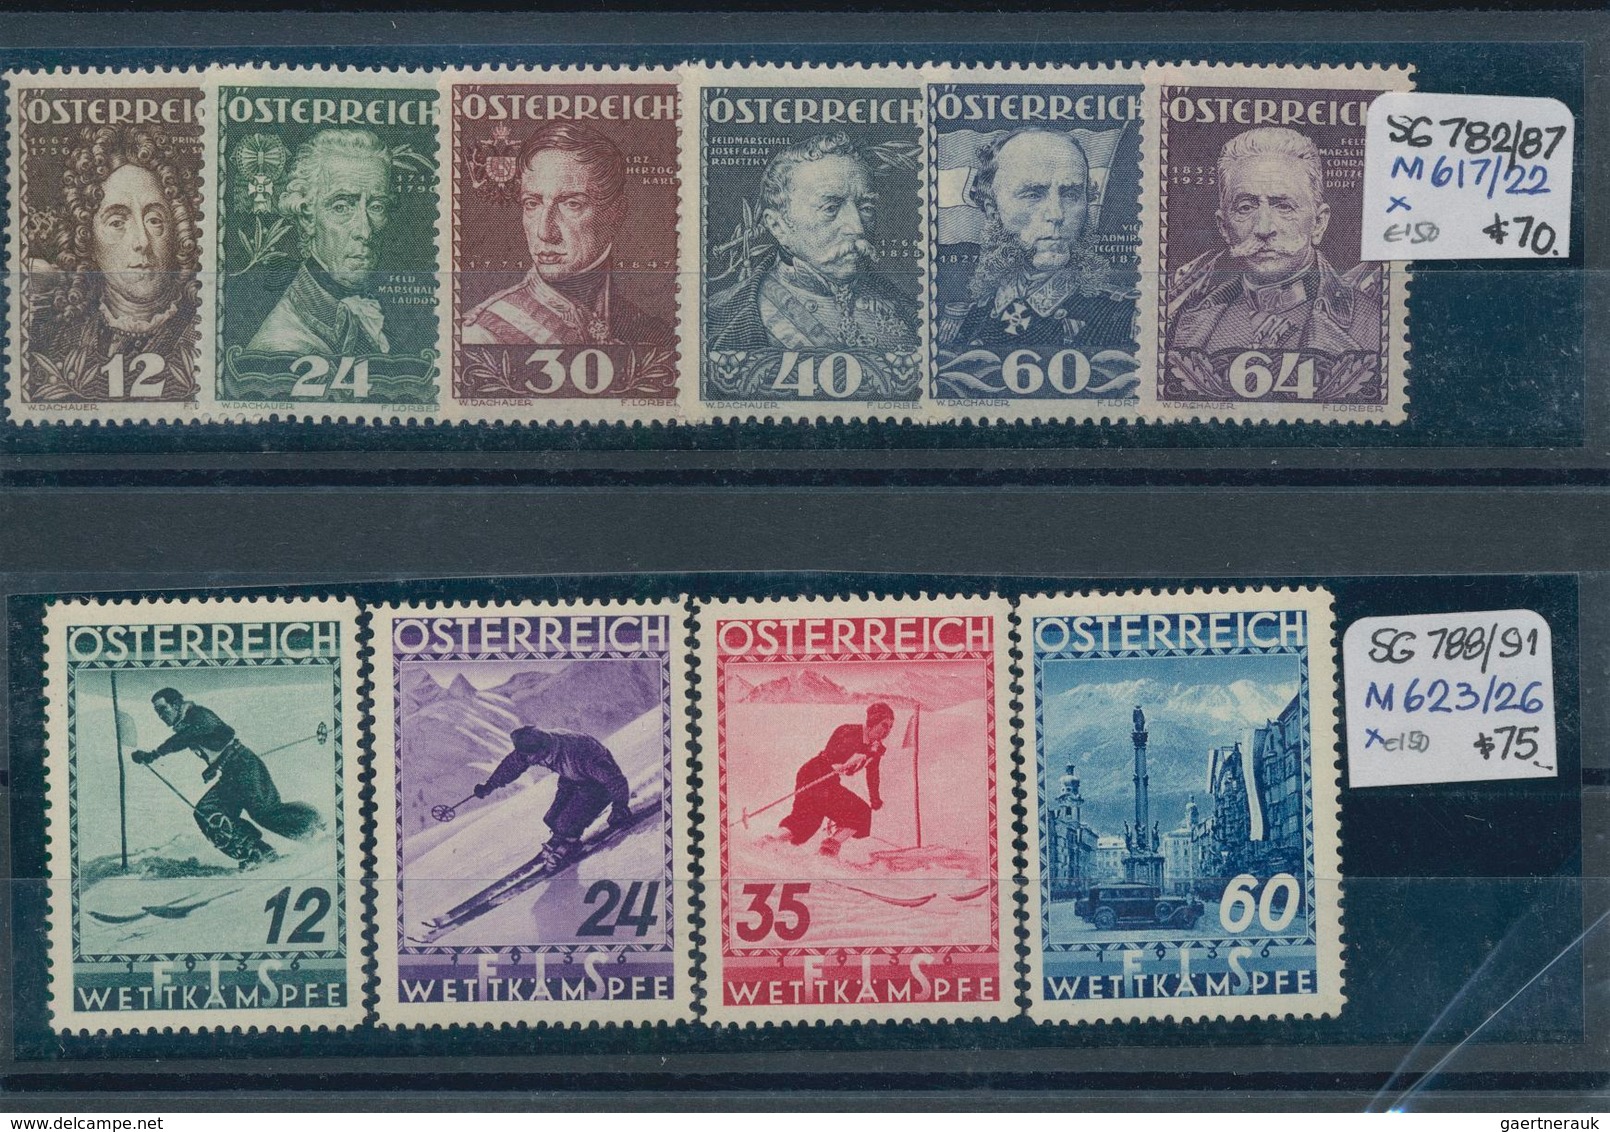 Österreich: 1850/1960 (ca.), sauber sortierter Bestand auf Steckkarten in zwei Ringalben, durchweg g